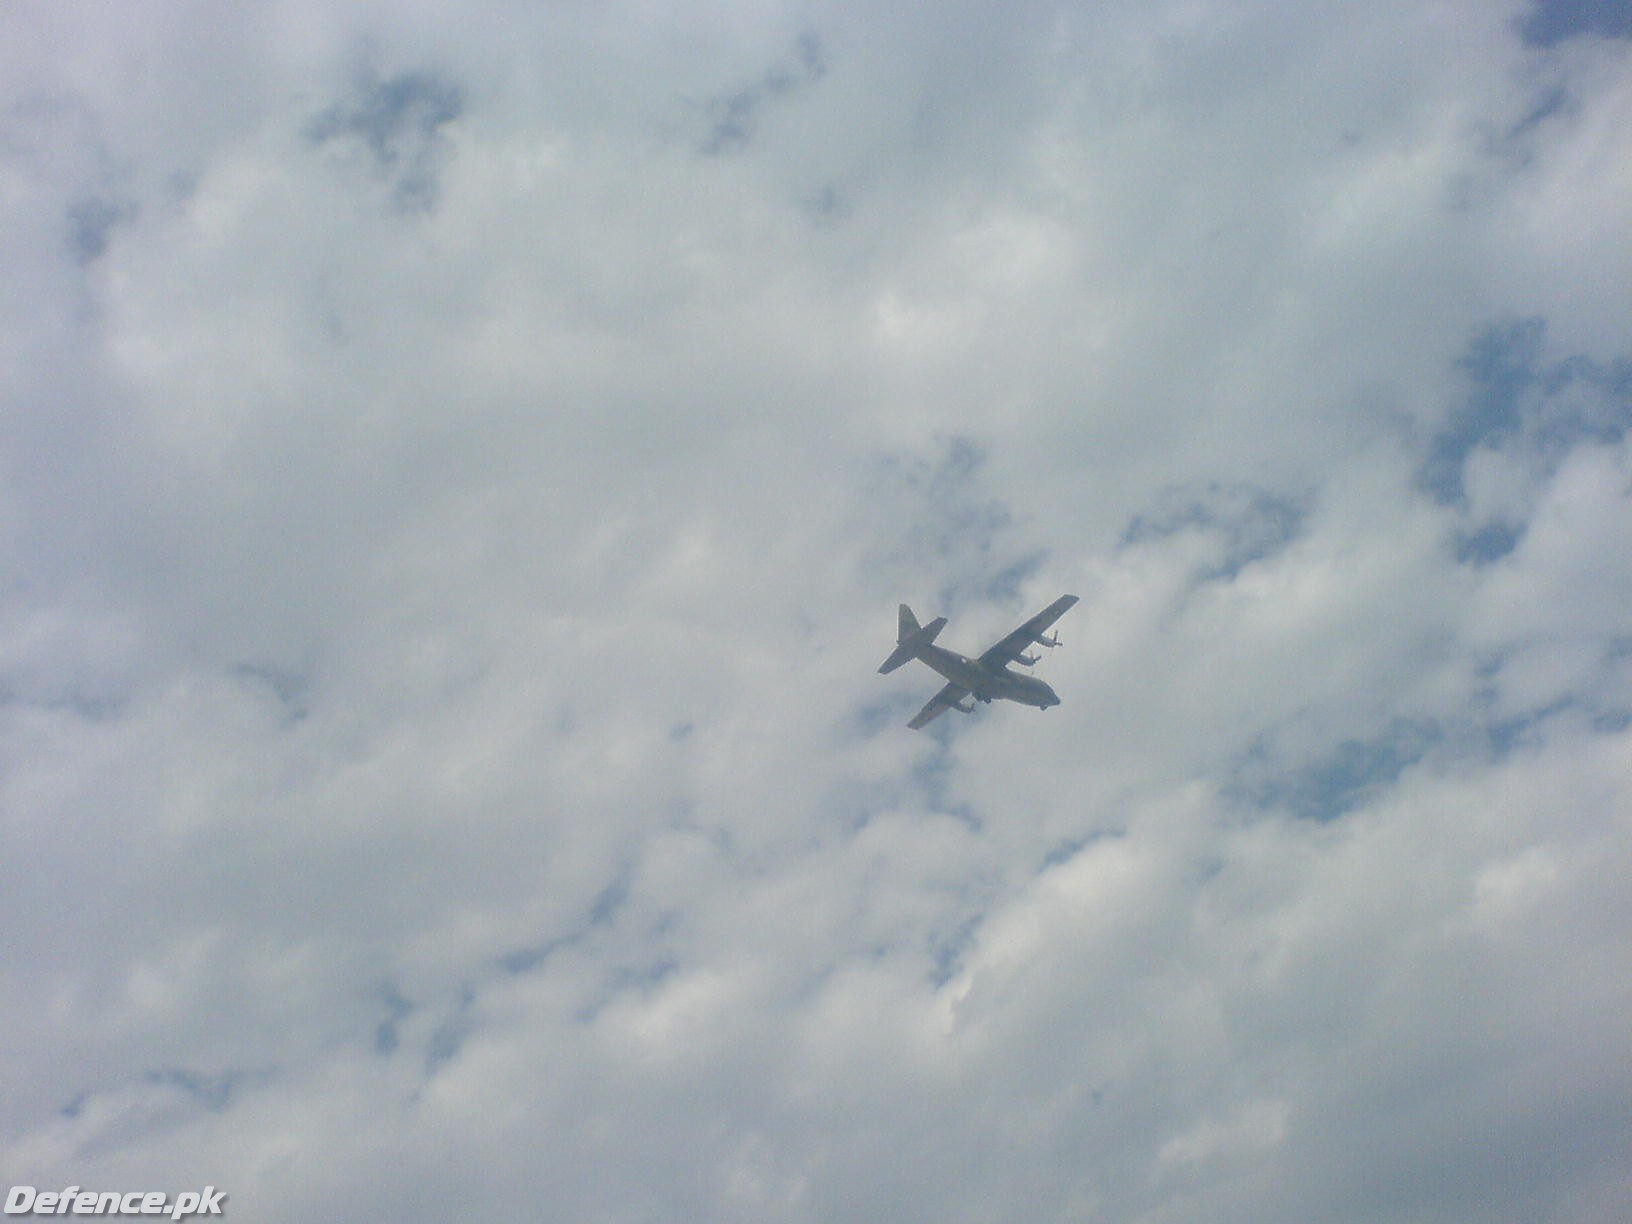 C-130 FLYING OVER NAWABSHAH